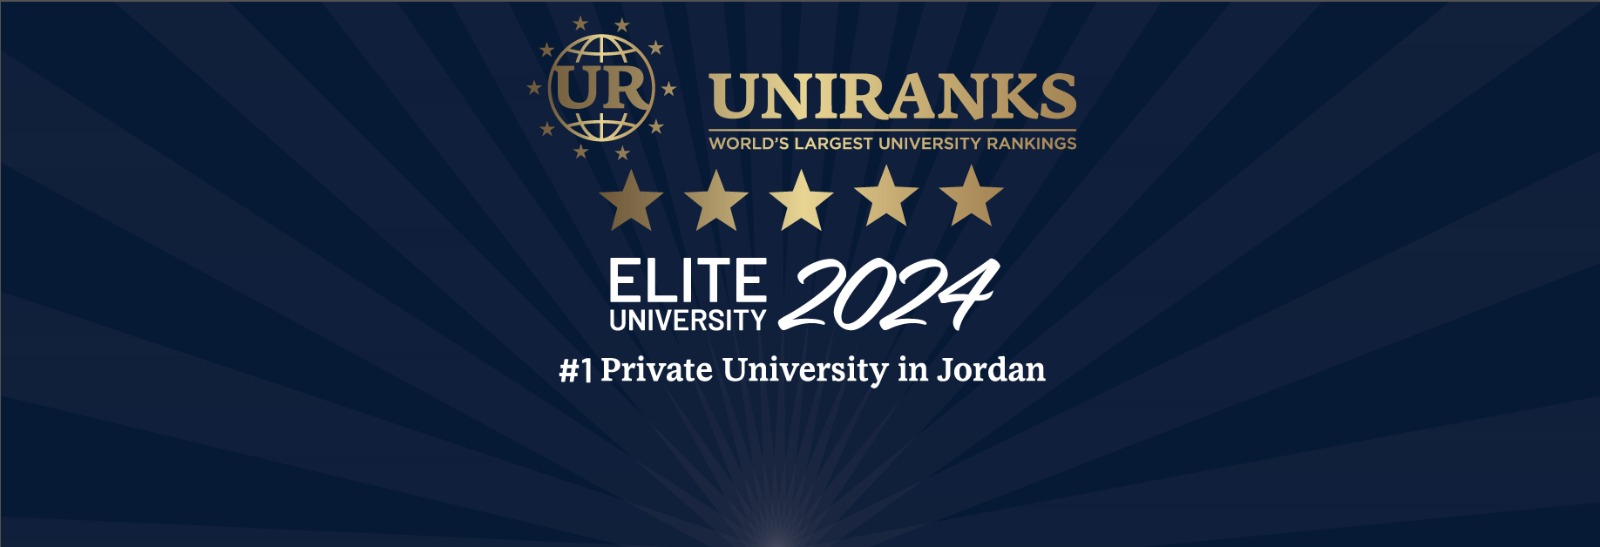 جامعة فيلادلفيا تتصدر قائمة الجامعات الخاصة وفق تصنيف UNIRANKS